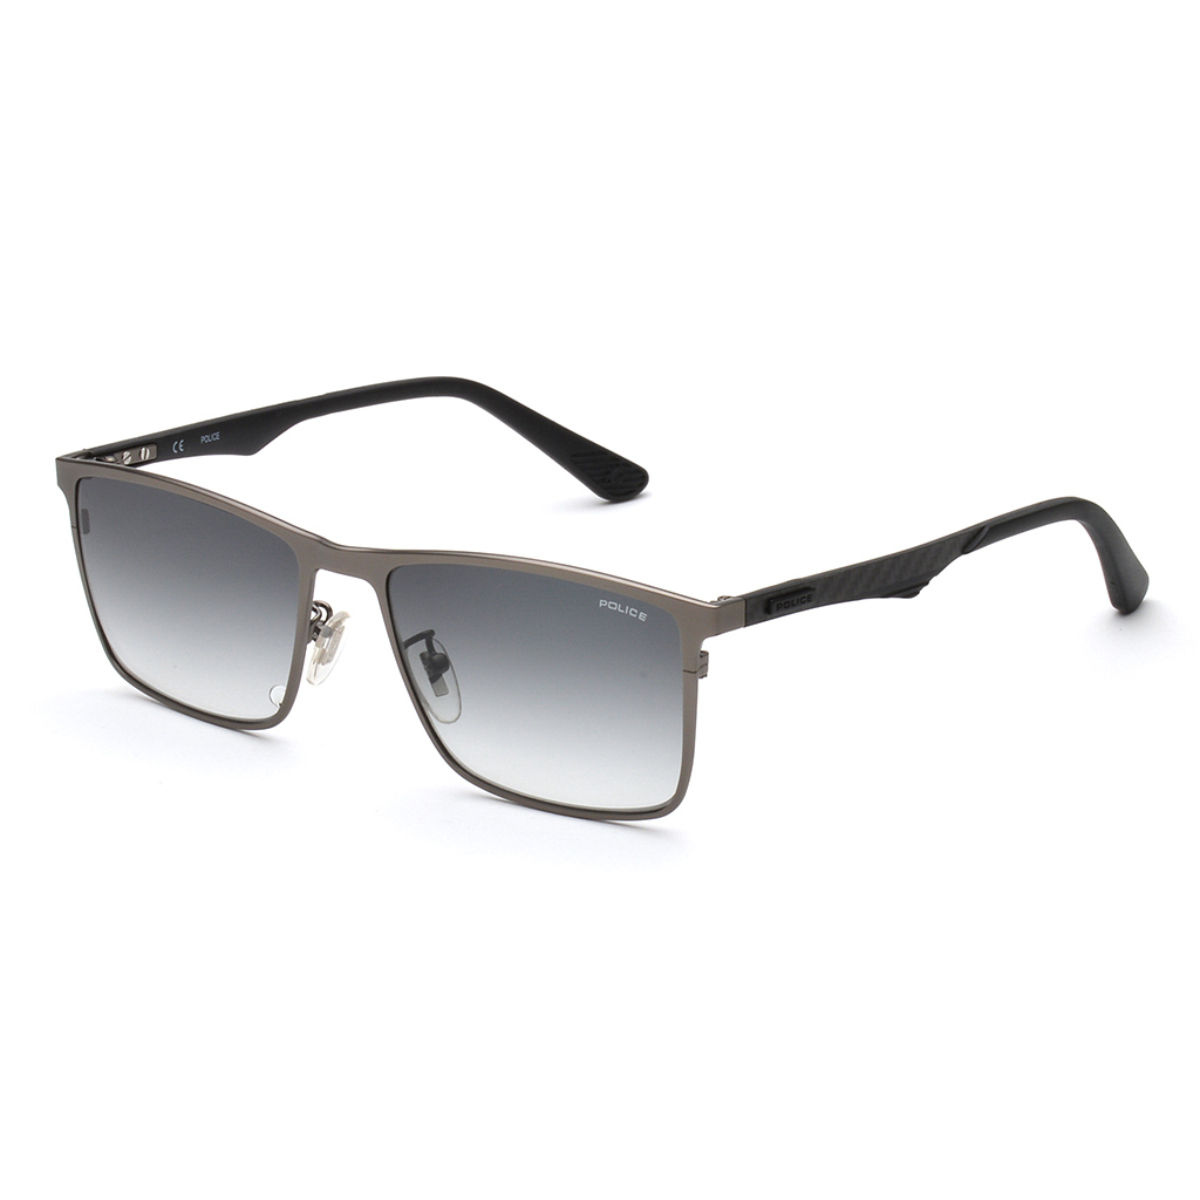 Police Sunglasses Rectangular Grey for Men's (SPL779K 627): Buy Police ...